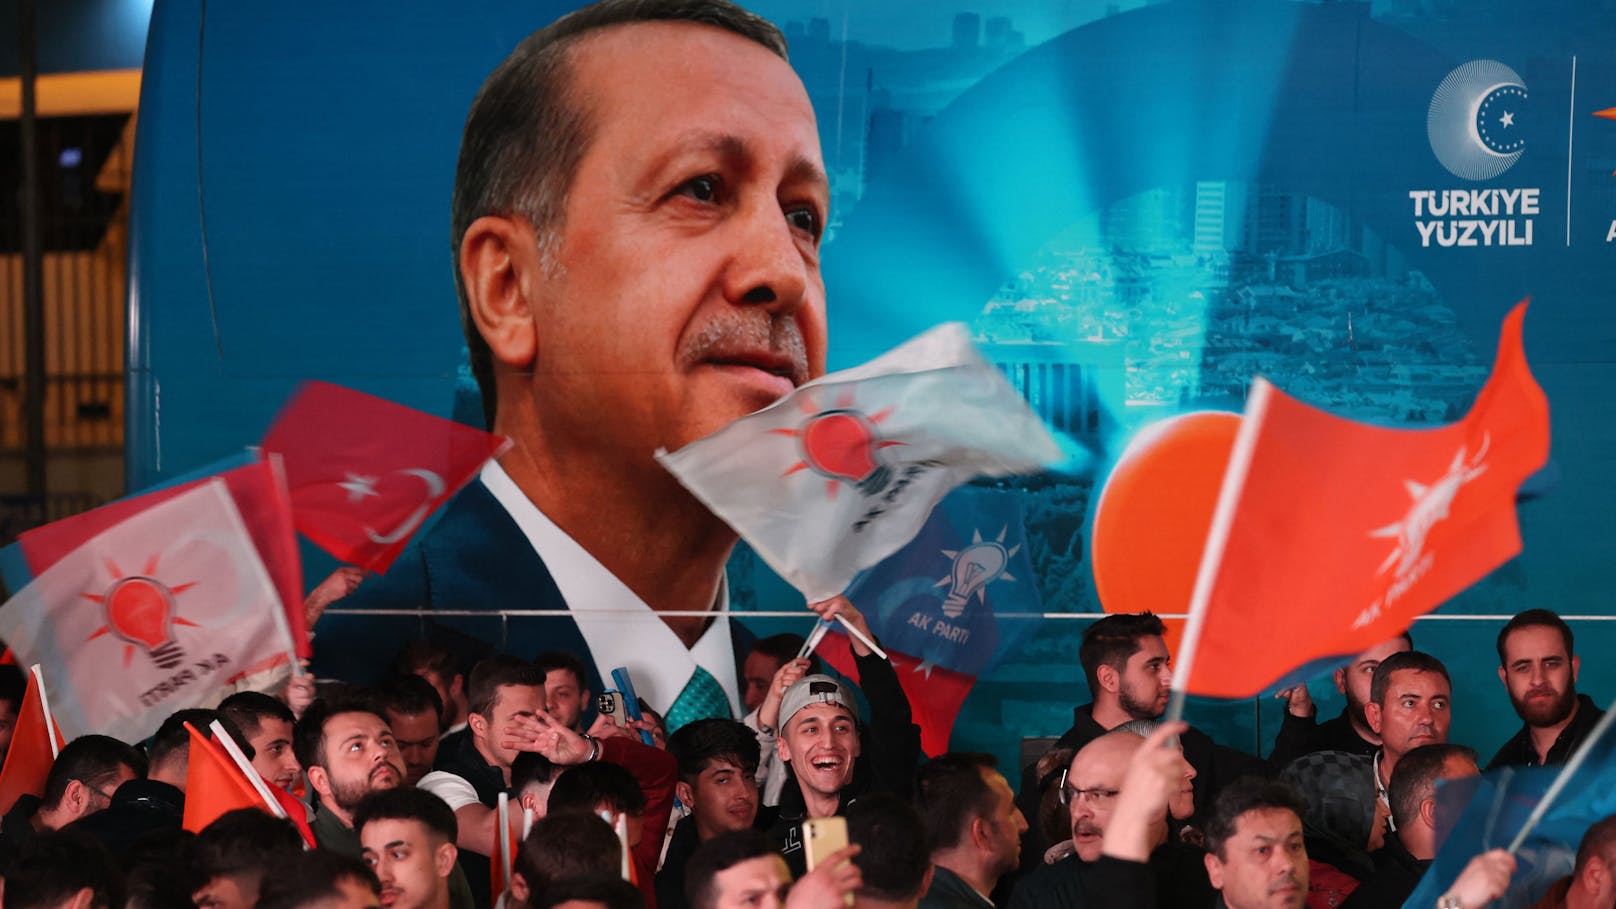 Niederlage! Erdogan-Partei verliert bei Istanbul-Wahl